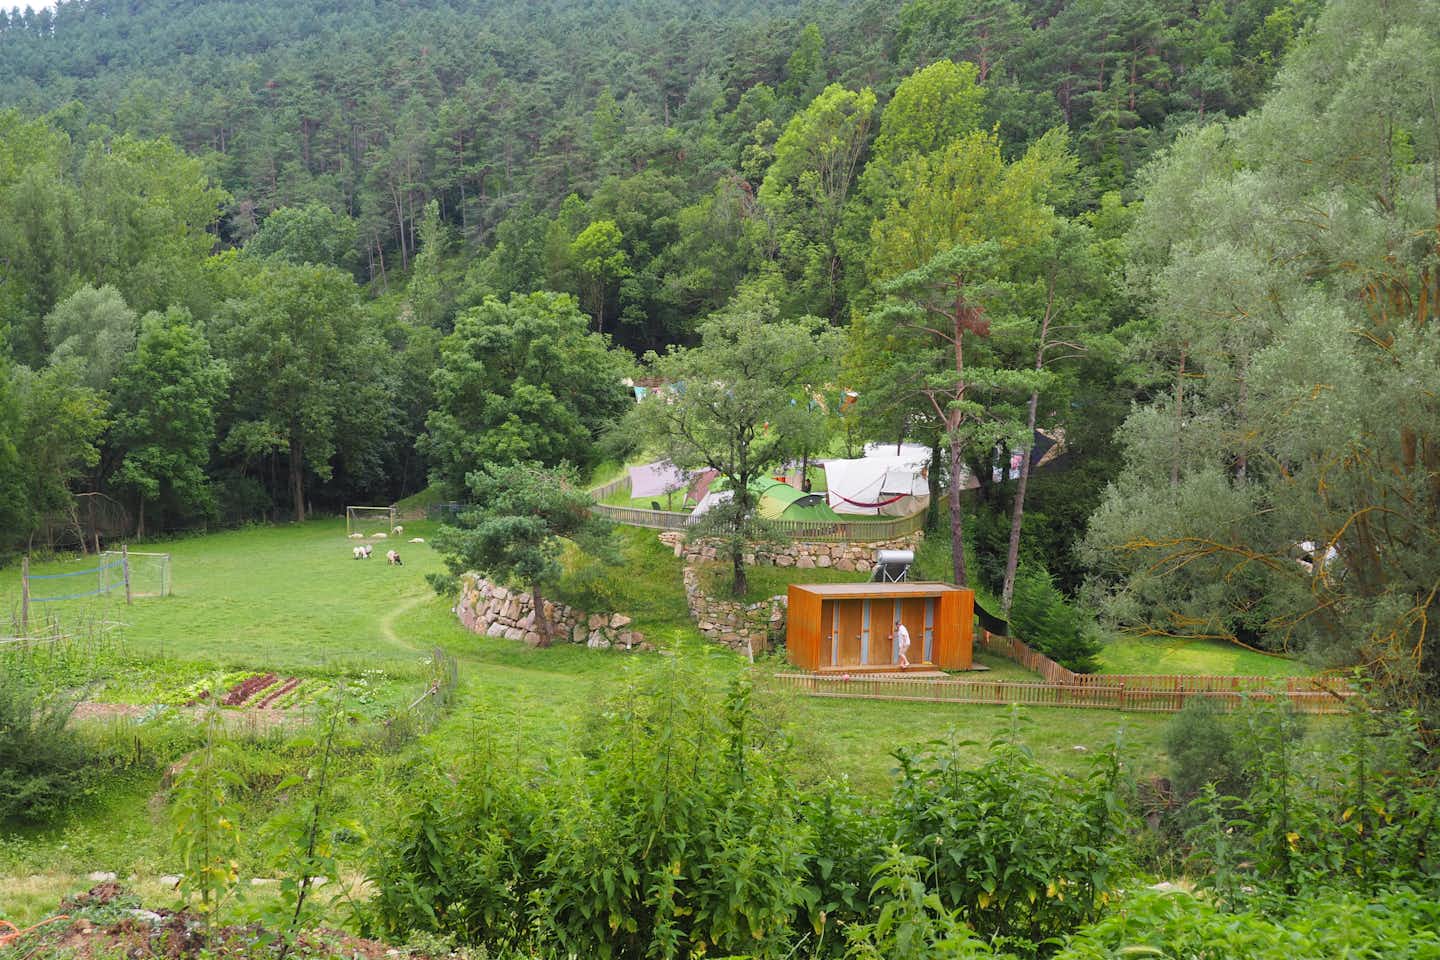 Camping Moli Serradell - Blick auf Sanitärgebäude, Fußballplatz, Volleyballfeld und Zeltplatz im Grünen auf dem Campingplatz